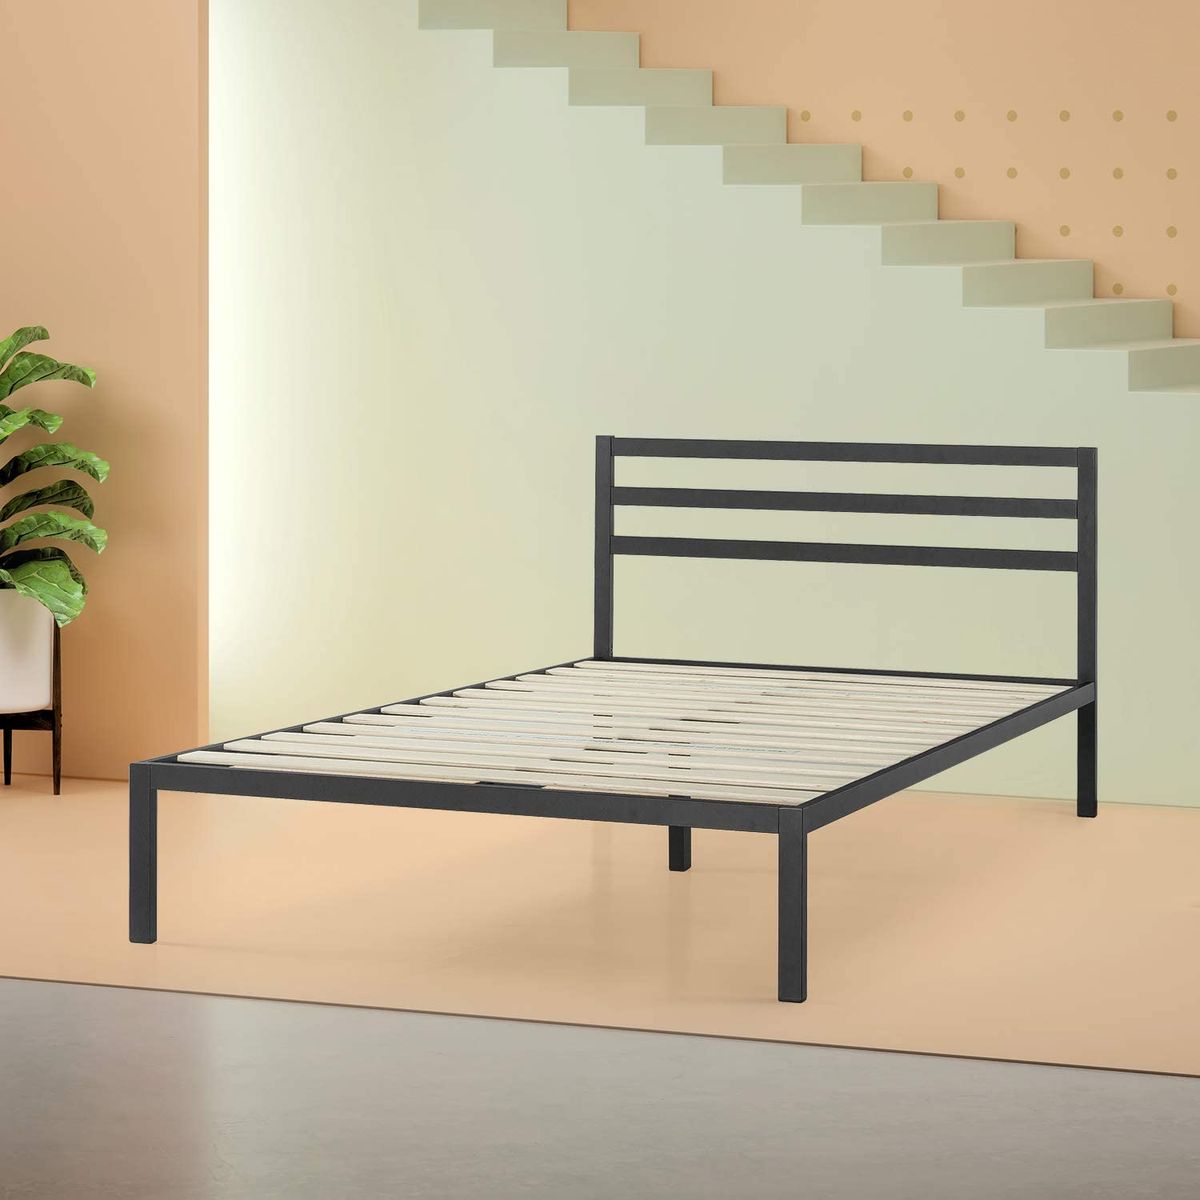 19 Best Metal Bed Frames 2020 The, Old Metal Bed Frame Assembly